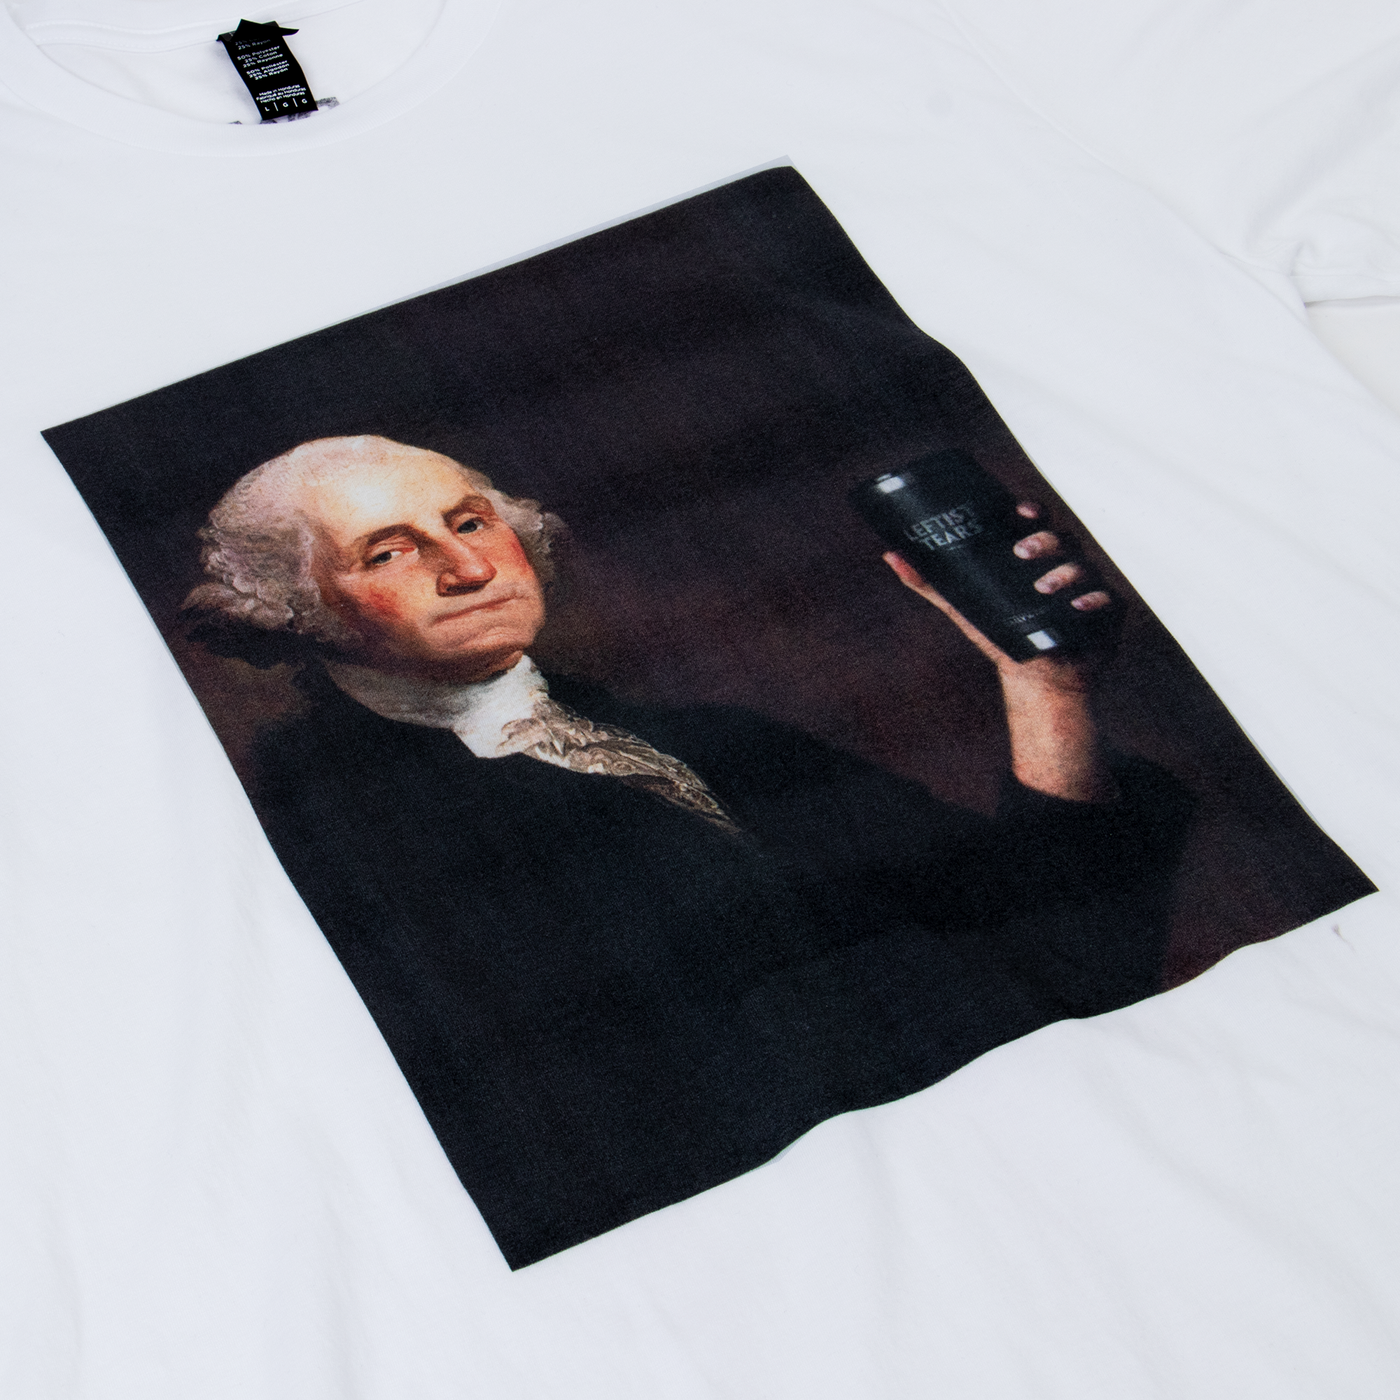 Founder's Leftist Tears T-Shirt